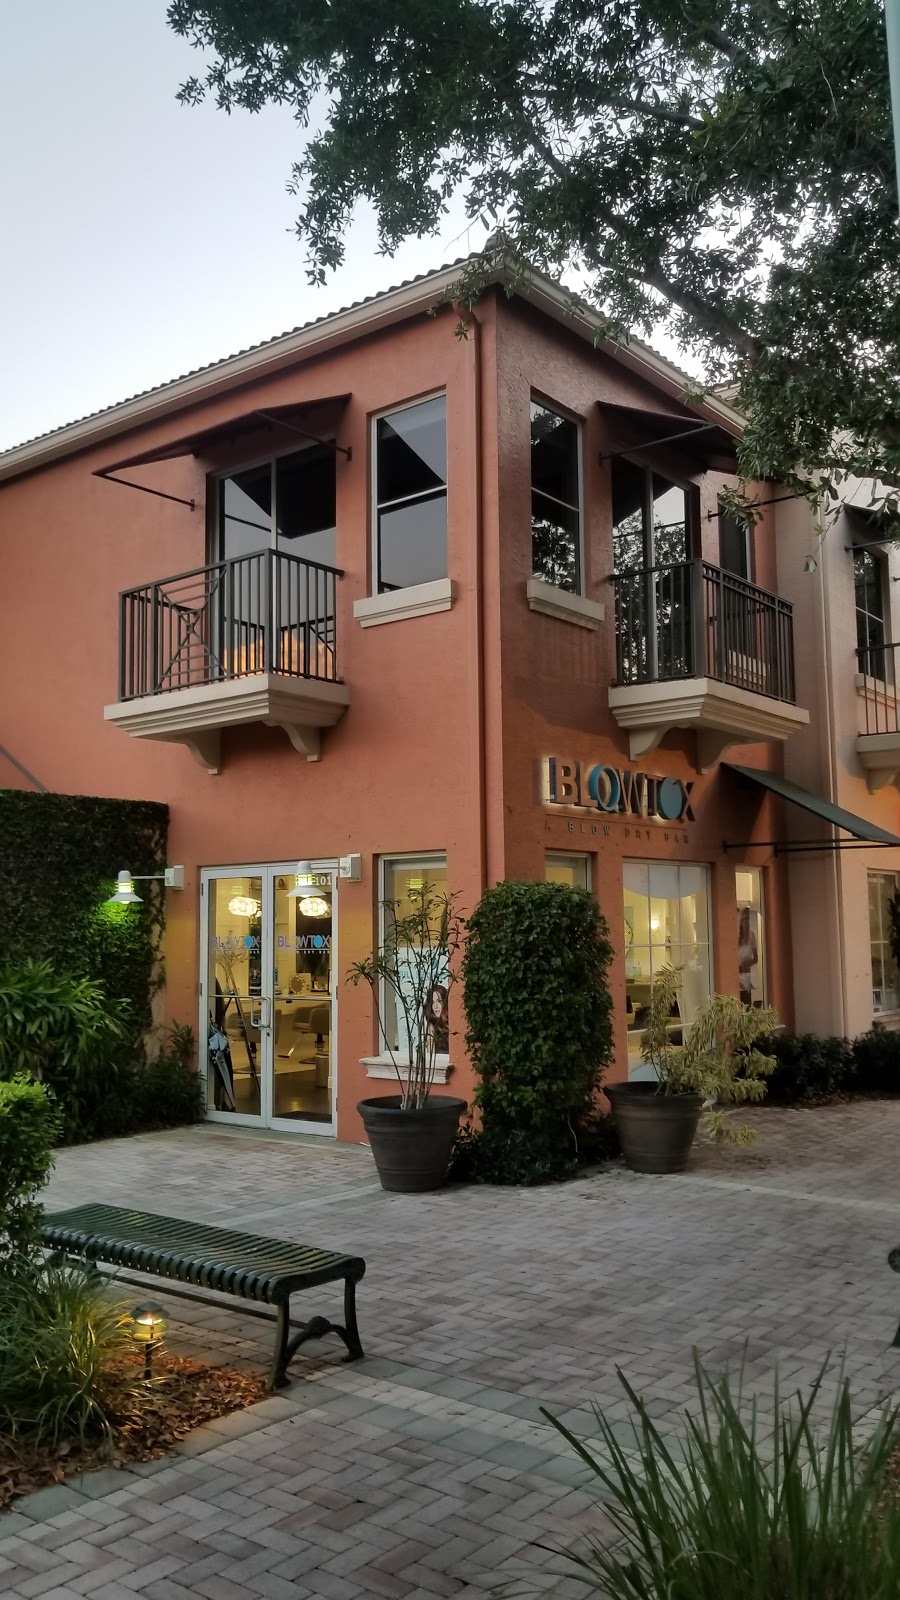 Blowtox - A Blow Dry Bar | 4580 PGA Boulevard STE 101, Palm Beach Gardens, FL 33418 | Phone: (561) 622-1177